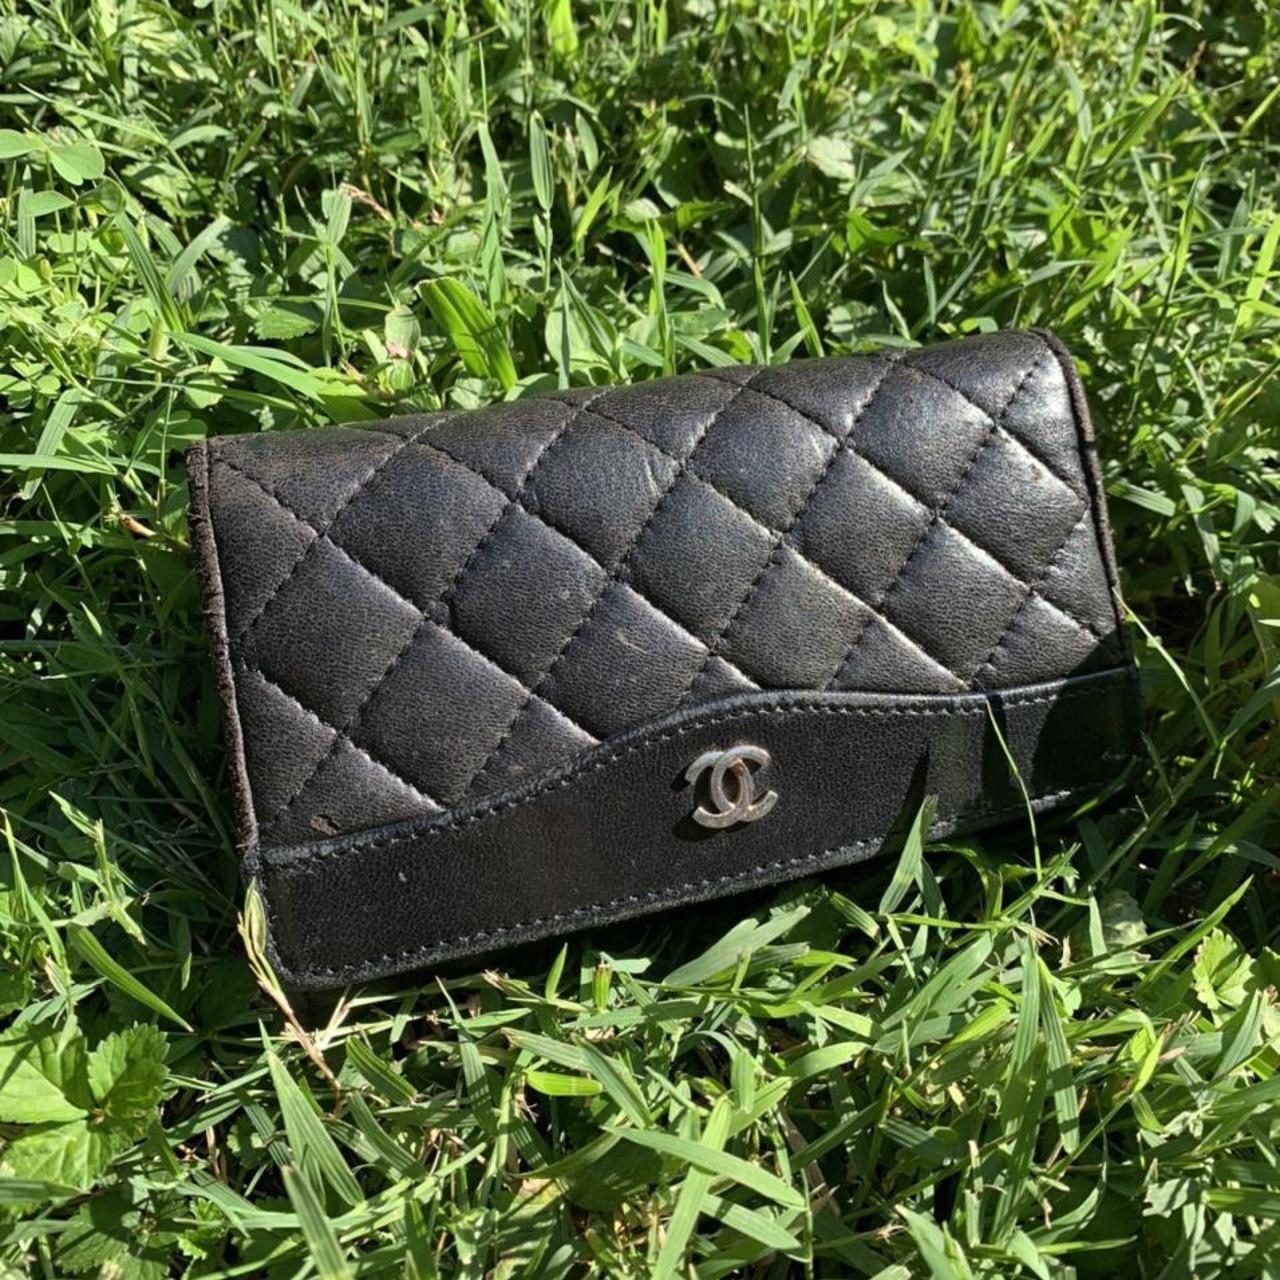 Vintage Chanel Wallet Black quilted leather 100% - Depop